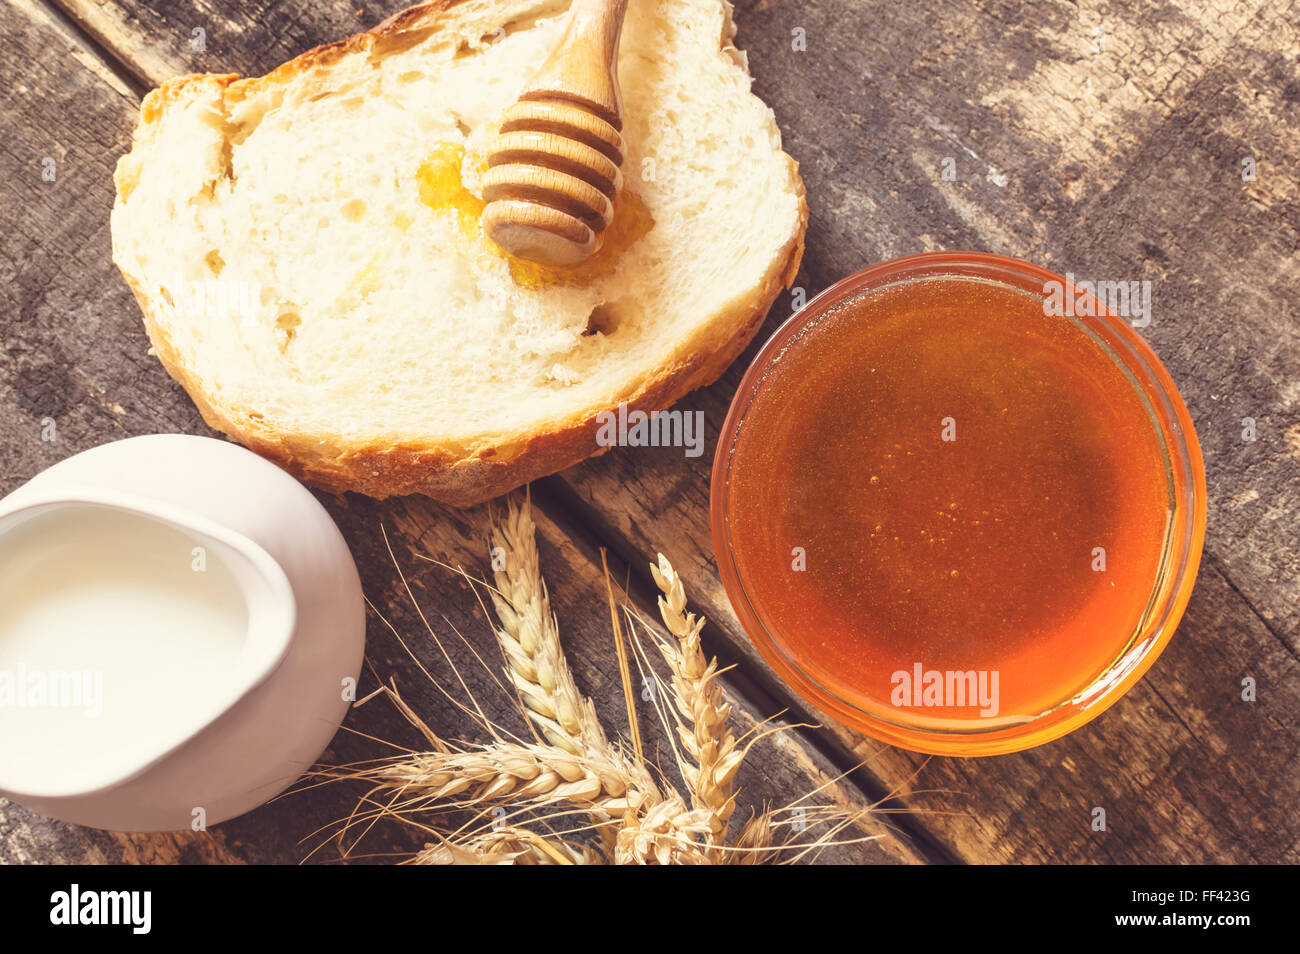 Honig in einem Glas, Scheibe Brot, Weizen und Milch auf einem alten Jahrgang beplankt Holztisch von oben. Frühstück im ländlichen oder rustikalen Stil Stockfoto